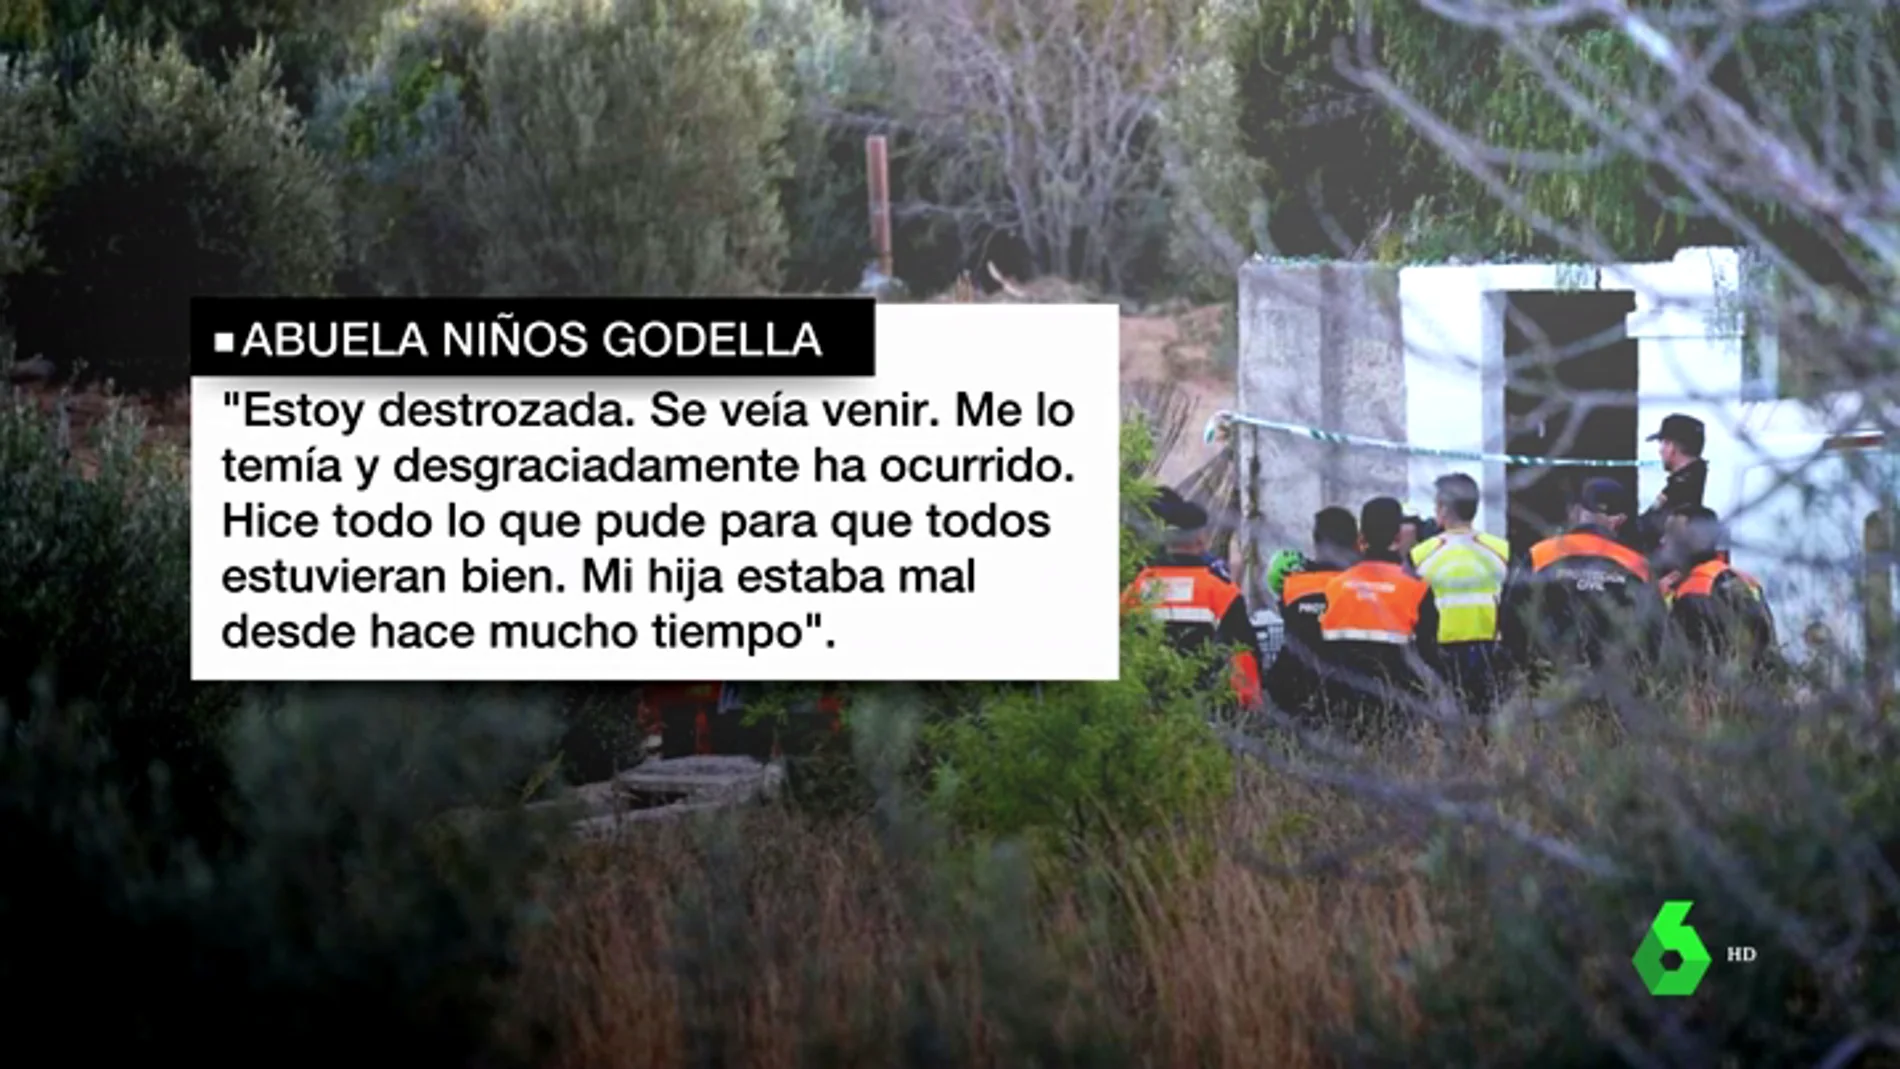 La abuela de los niños asesinados en Godella: "Estoy destrozada, se veía venir. Hice todo lo que pude para que todos estuvieran bien"